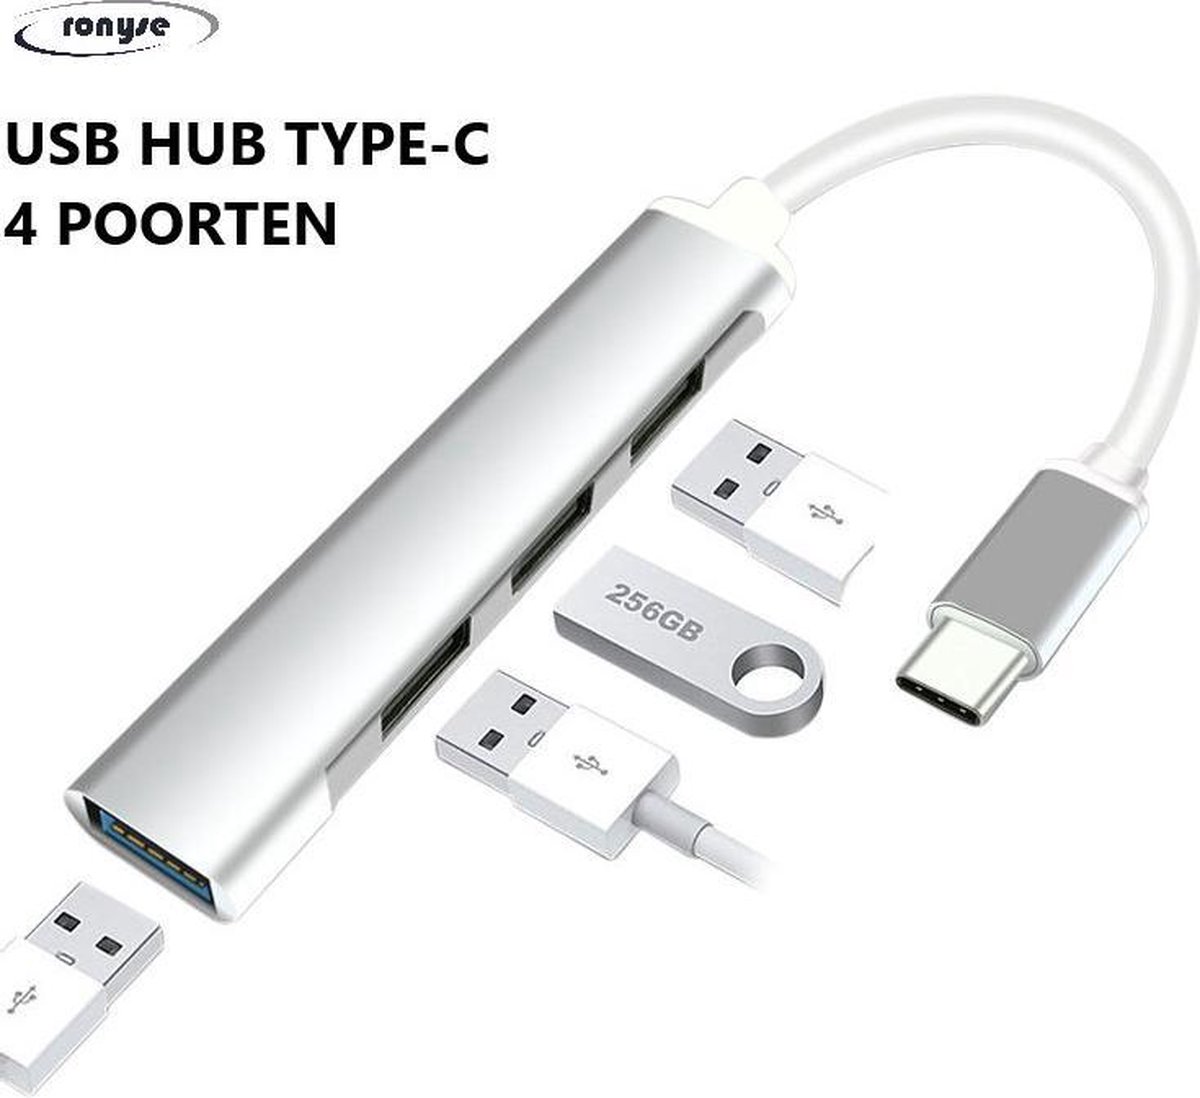 4 in 1 USB C-HUB Multipoort Adapter - 4x USB poorten - USB 3.0 en Type-C opladen - Bruikbaar voor Macbook Pro, iPad Pro